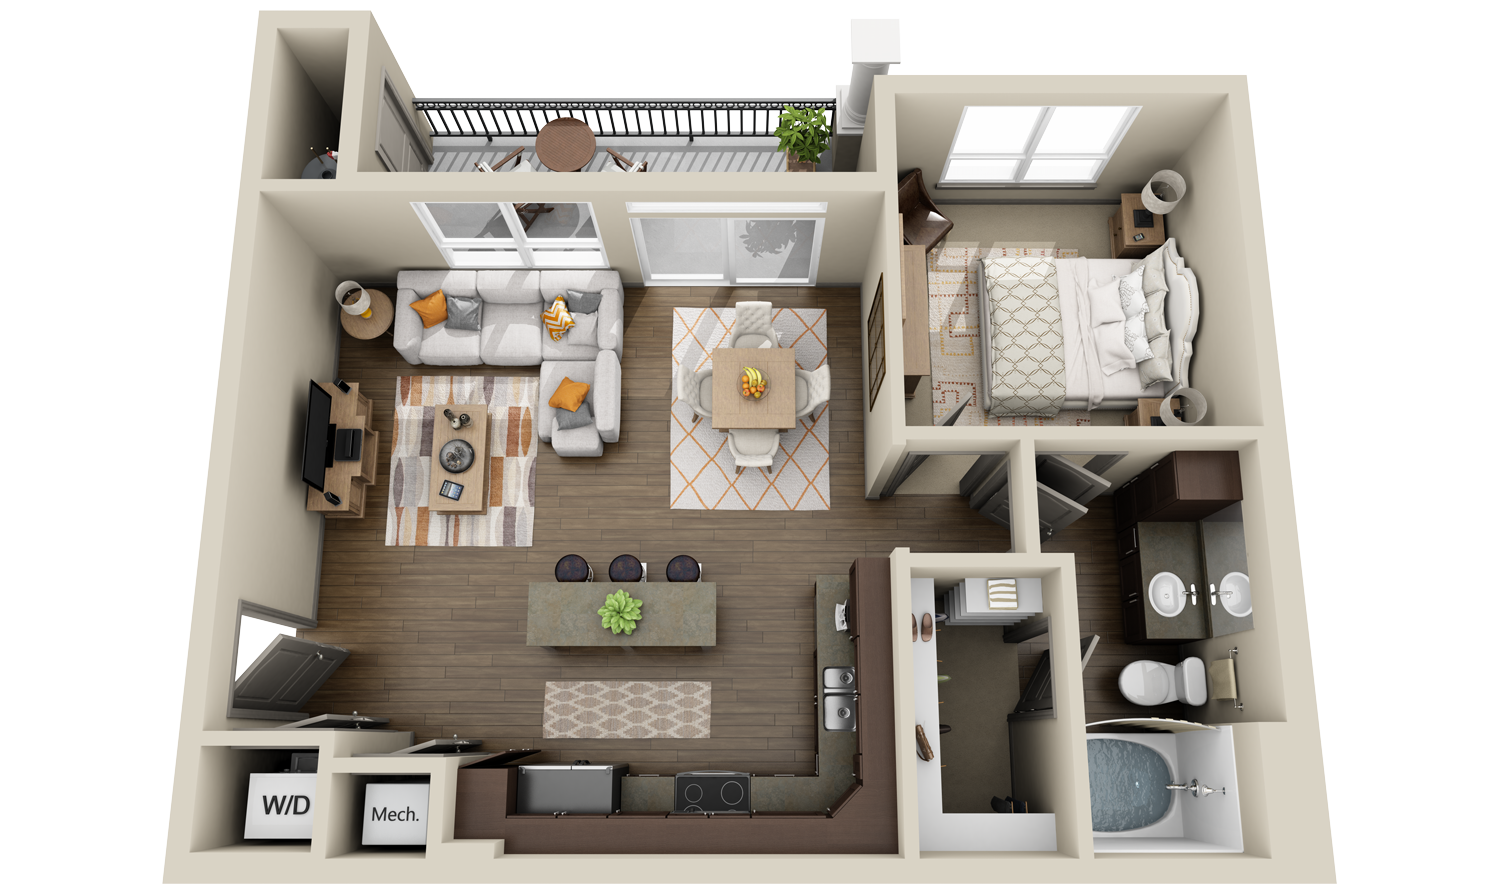 2_Apartments and Condos « 3Dplans.com